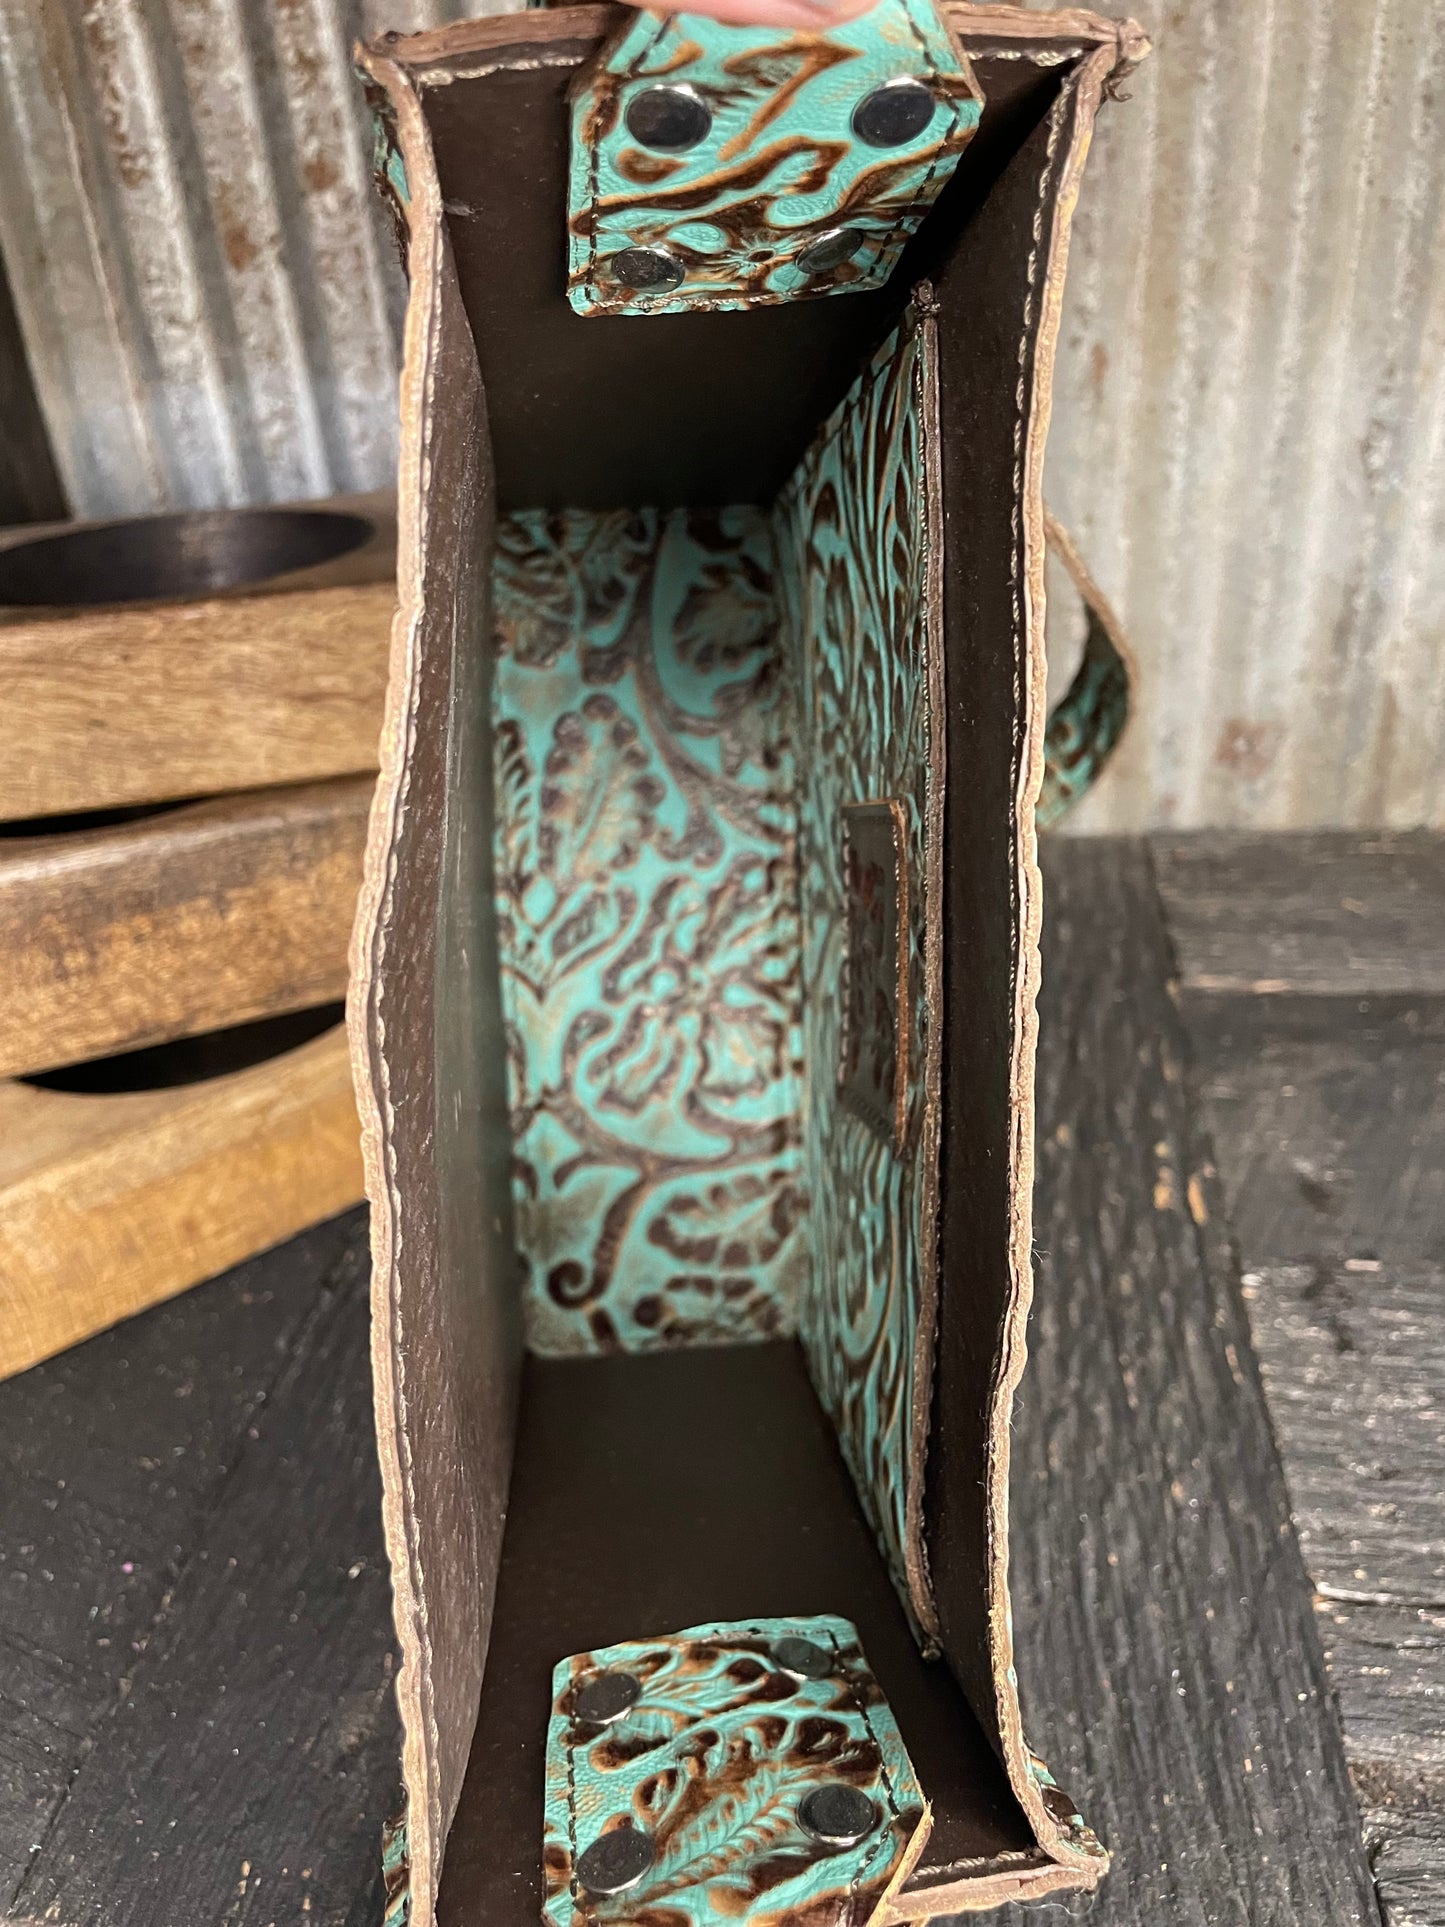 Box Style 8x8, Cowboy Tooled Turquoise